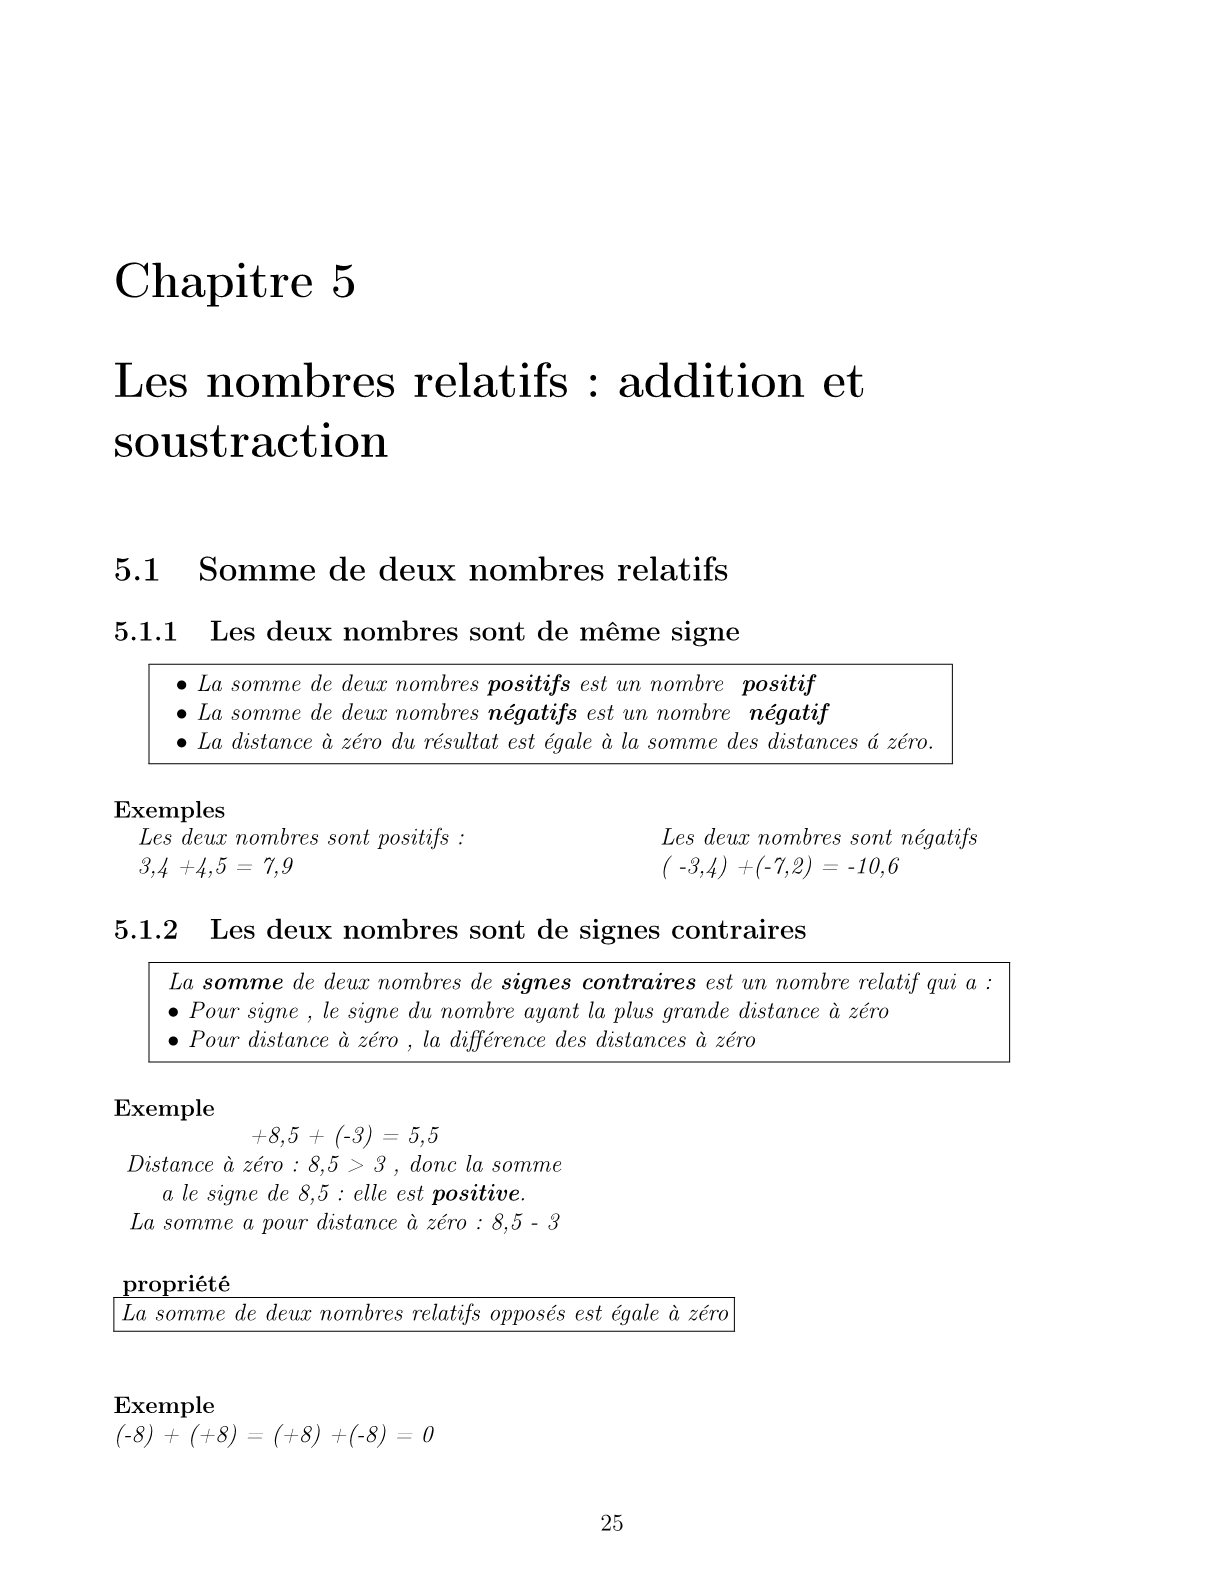 درس Les nombres relatifs addition et soustraction للسنة الأولى اعدادي